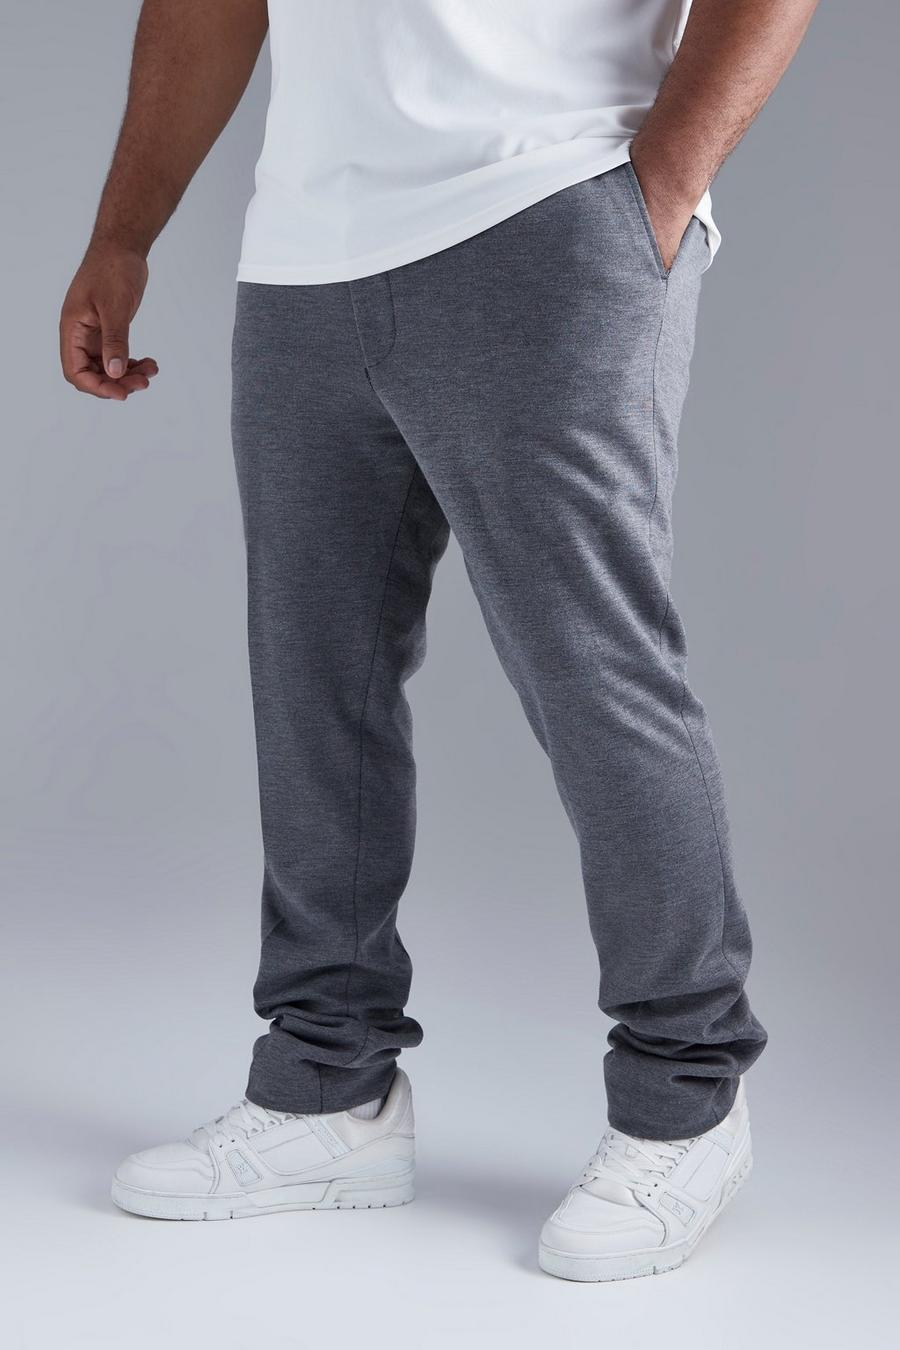 Pantaloni Plus Size Skinny Fit in jersey pesante con vita elasticizzata, Grey grigio